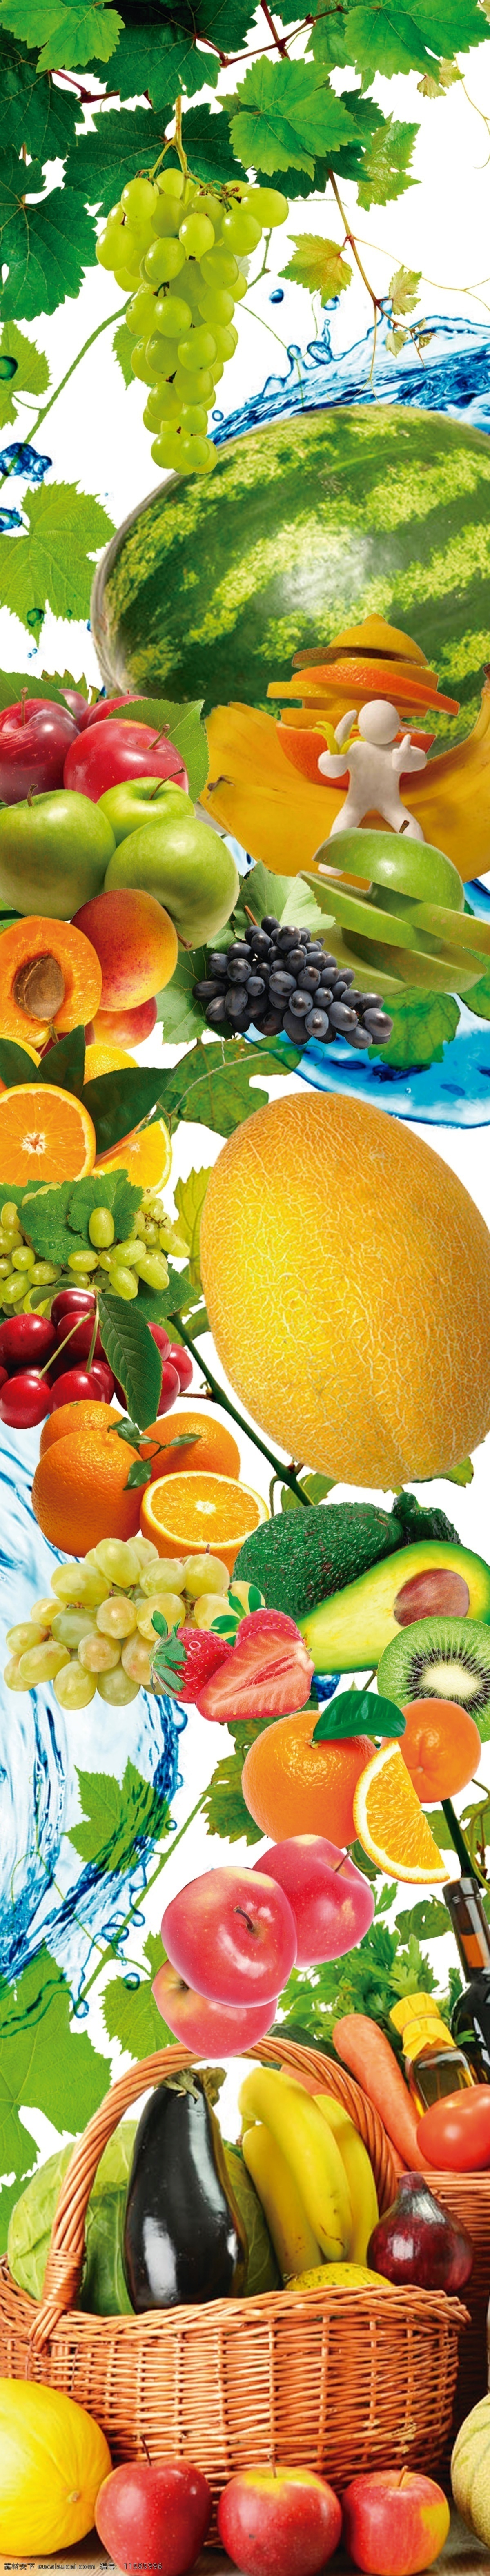 水果包柱 水果 葡萄 香蕉 西瓜 梨 包柱 桃 樱桃 芒果 橙 橘子 果篮 装饰类 分层 背景素材